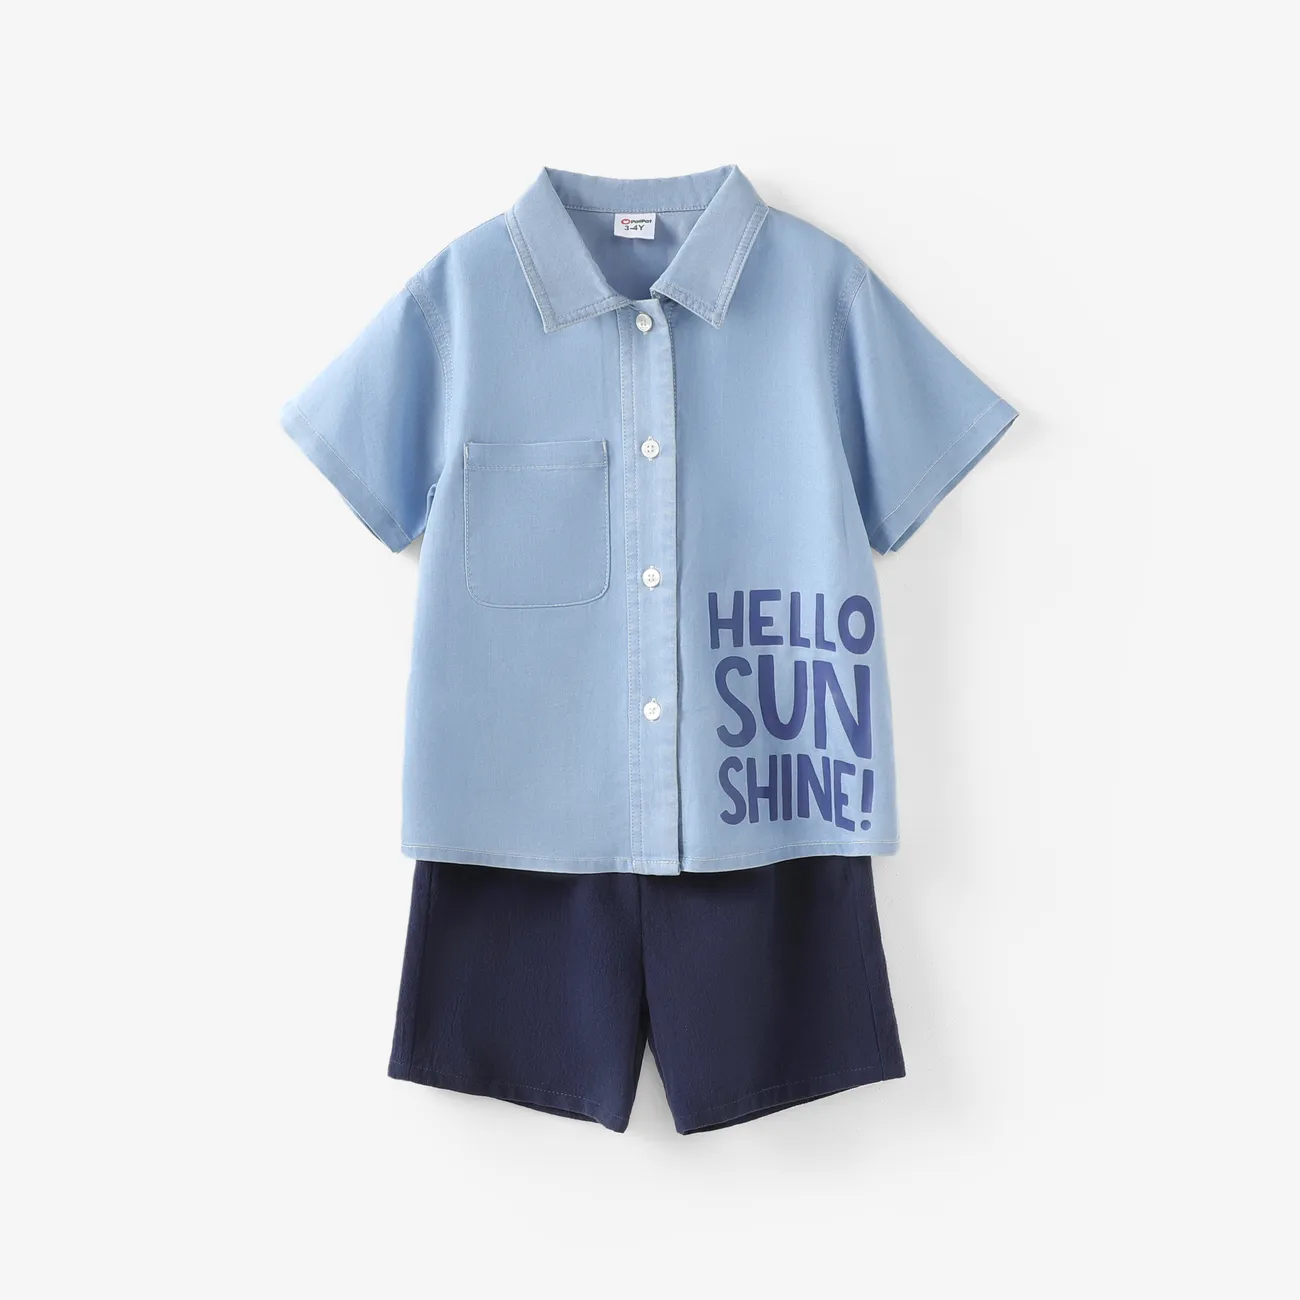 طفل صغير / طفل صبي 2 قطع تبريد الدنيم رسالة طباعة قميص والسراويل الضوء الأزرق big image 1